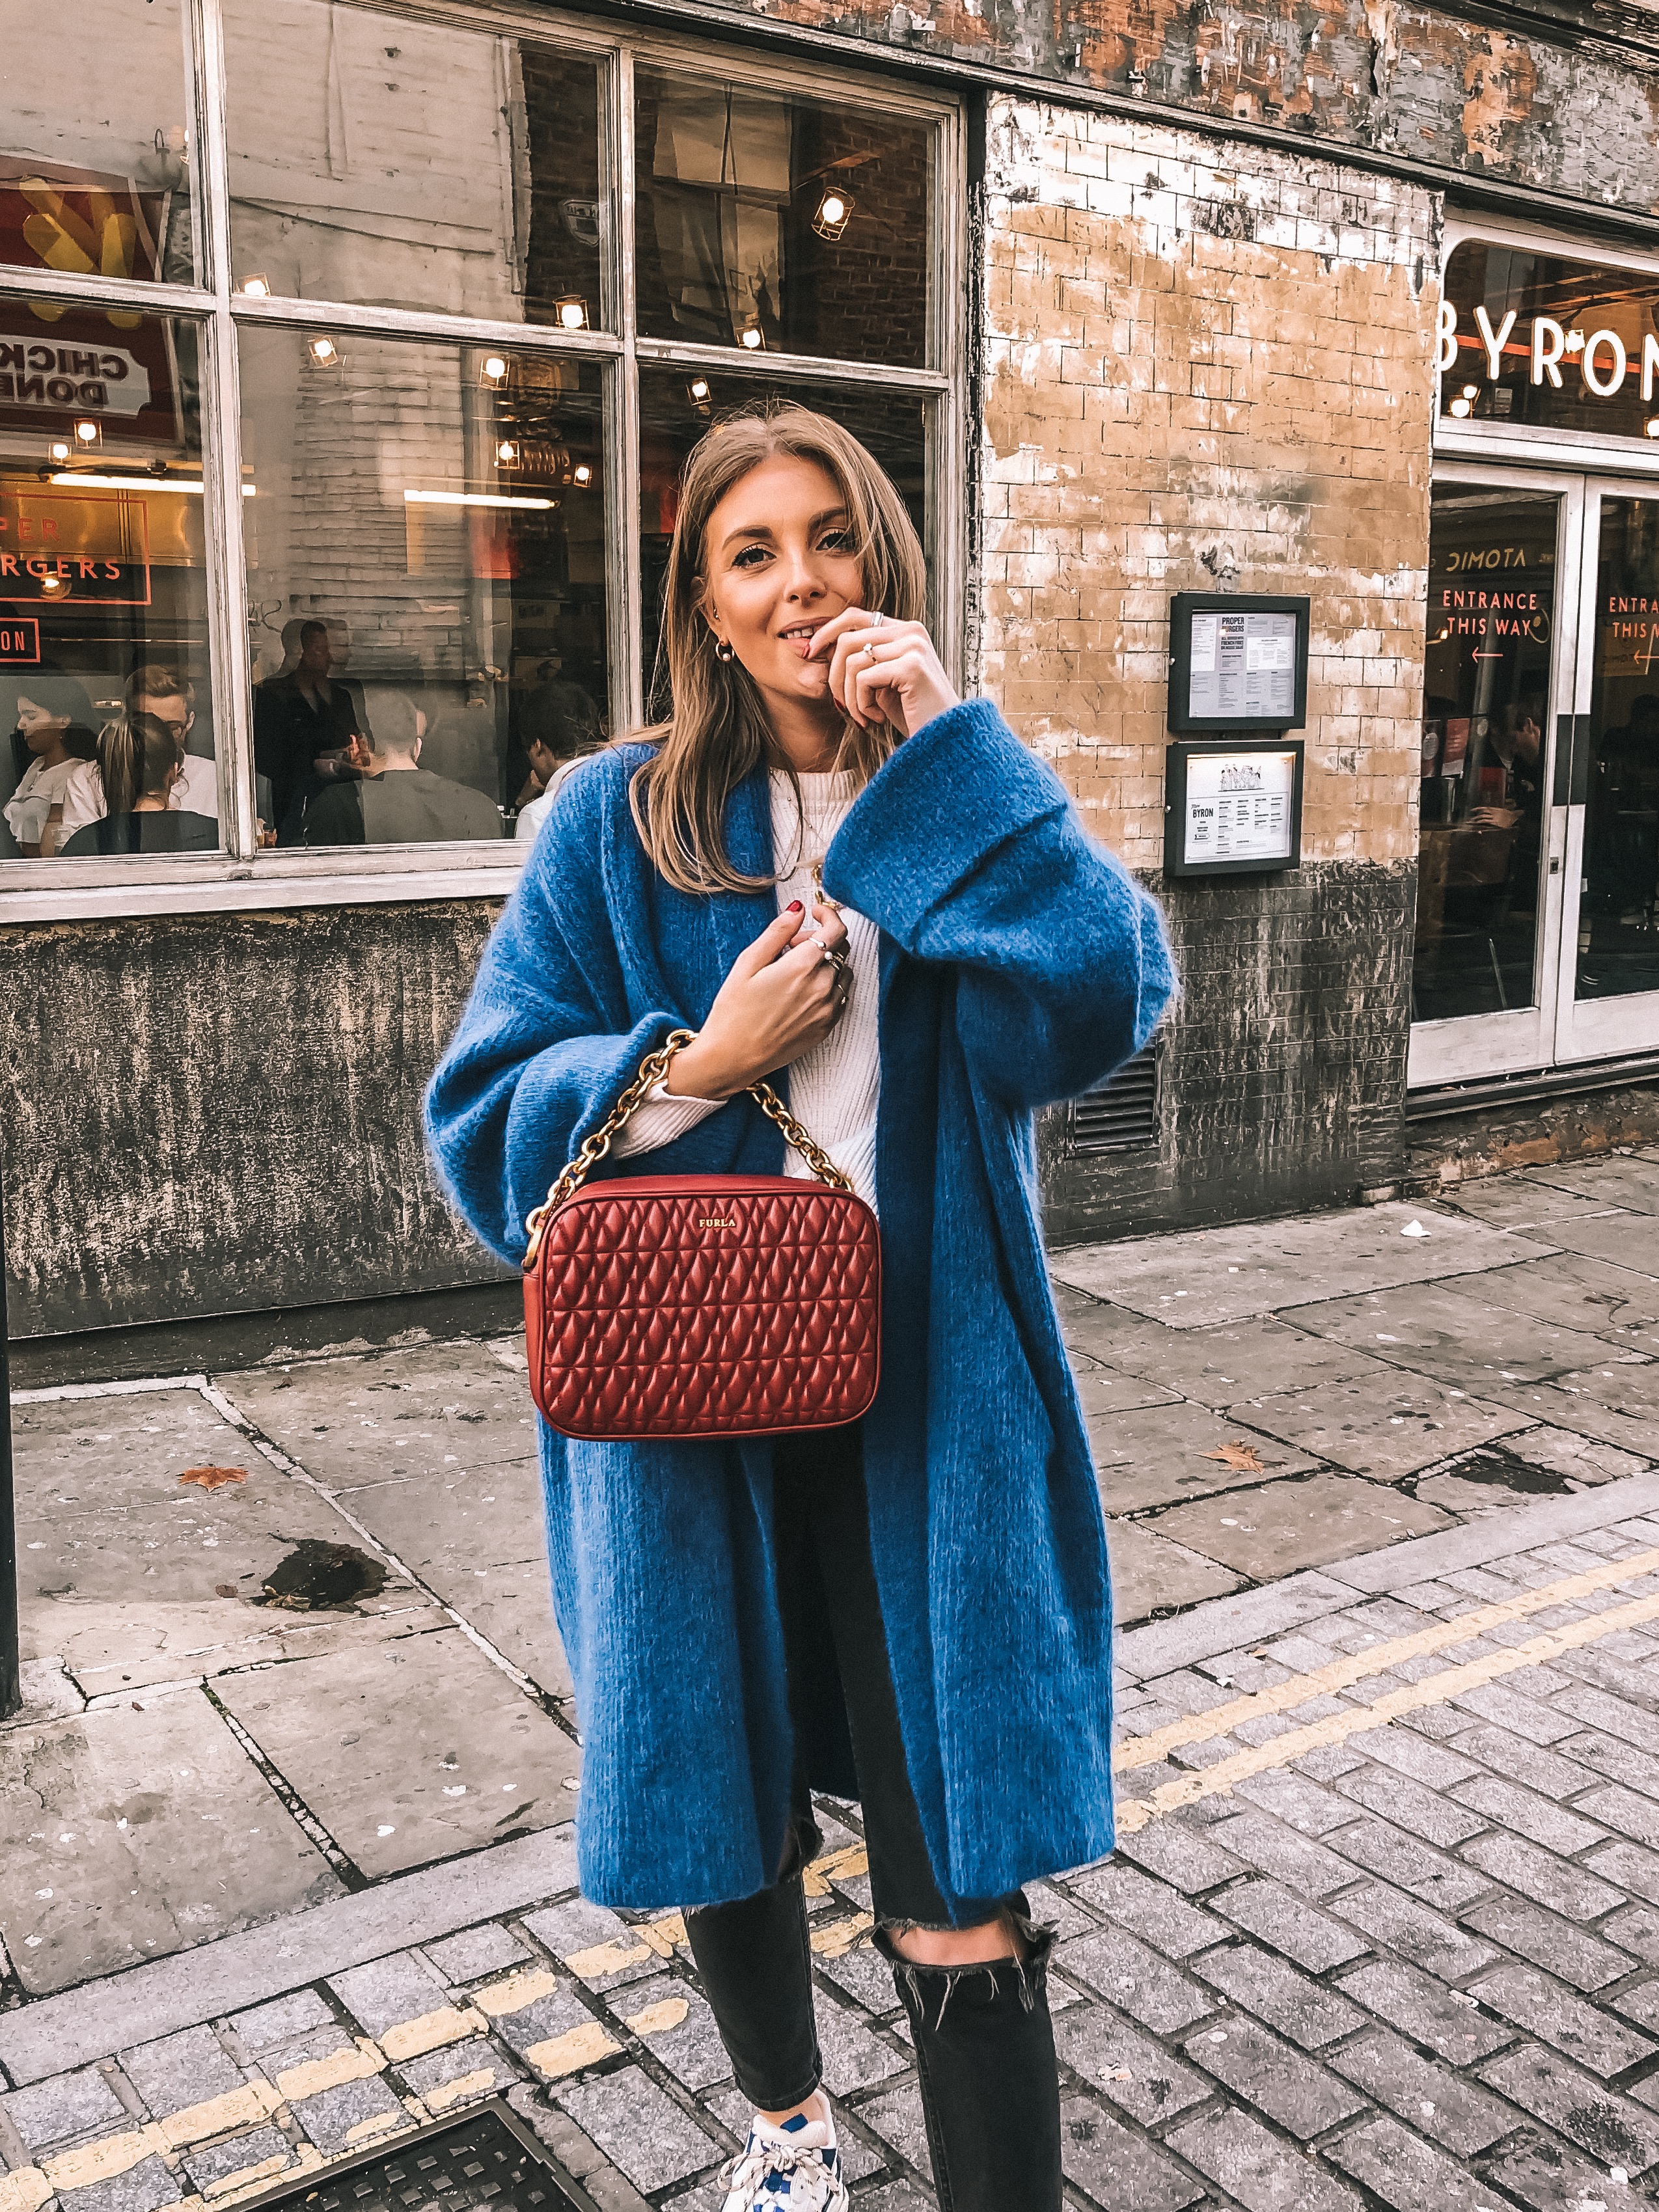 Best Knitwear - & Other Stories Blue Chunky Knit - London Street Style - Sinead Crowe